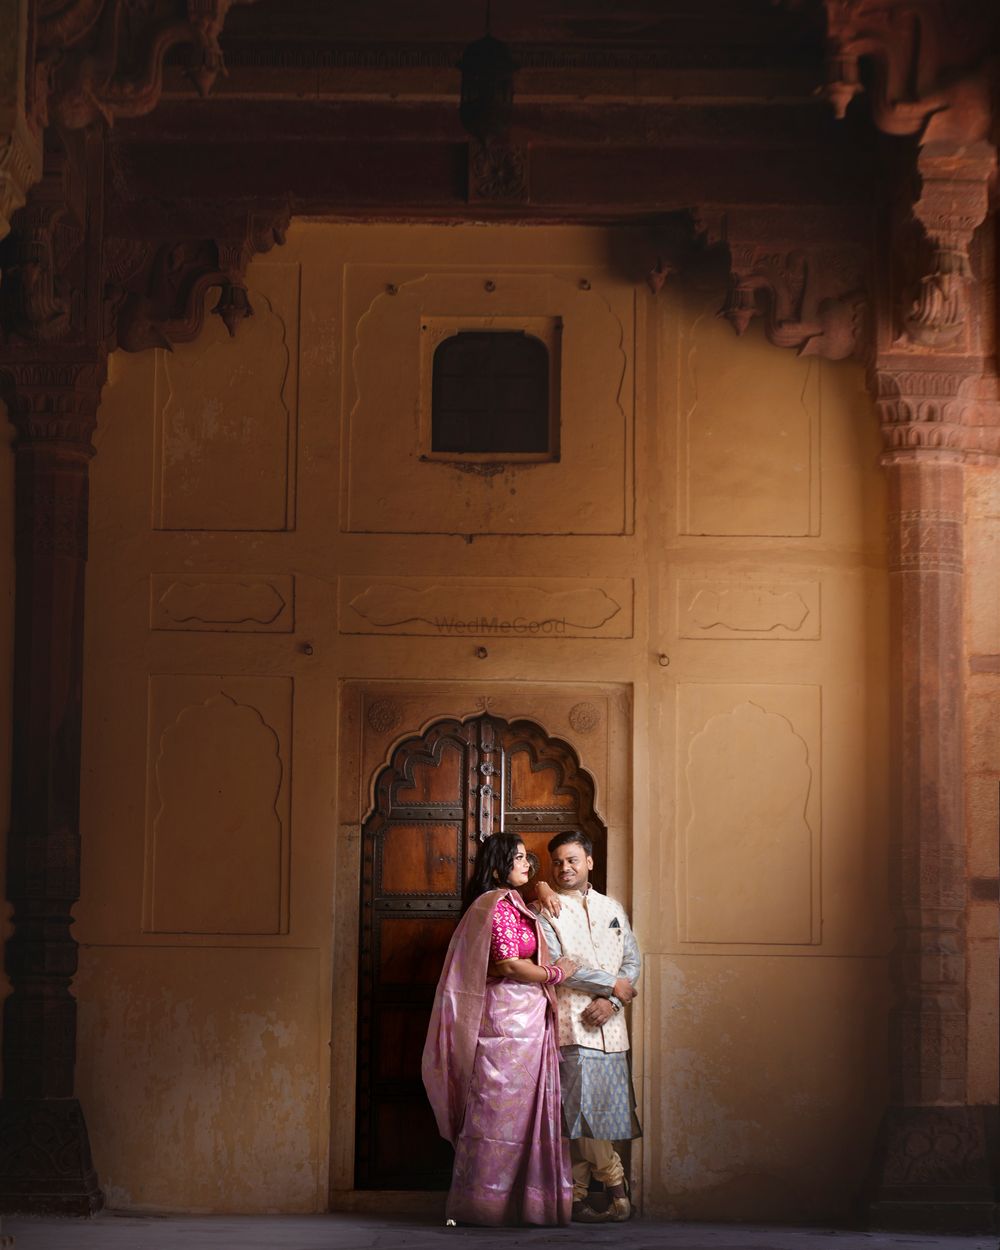 Photo From Sandhya & Priyatosh - By Wedding Sutra